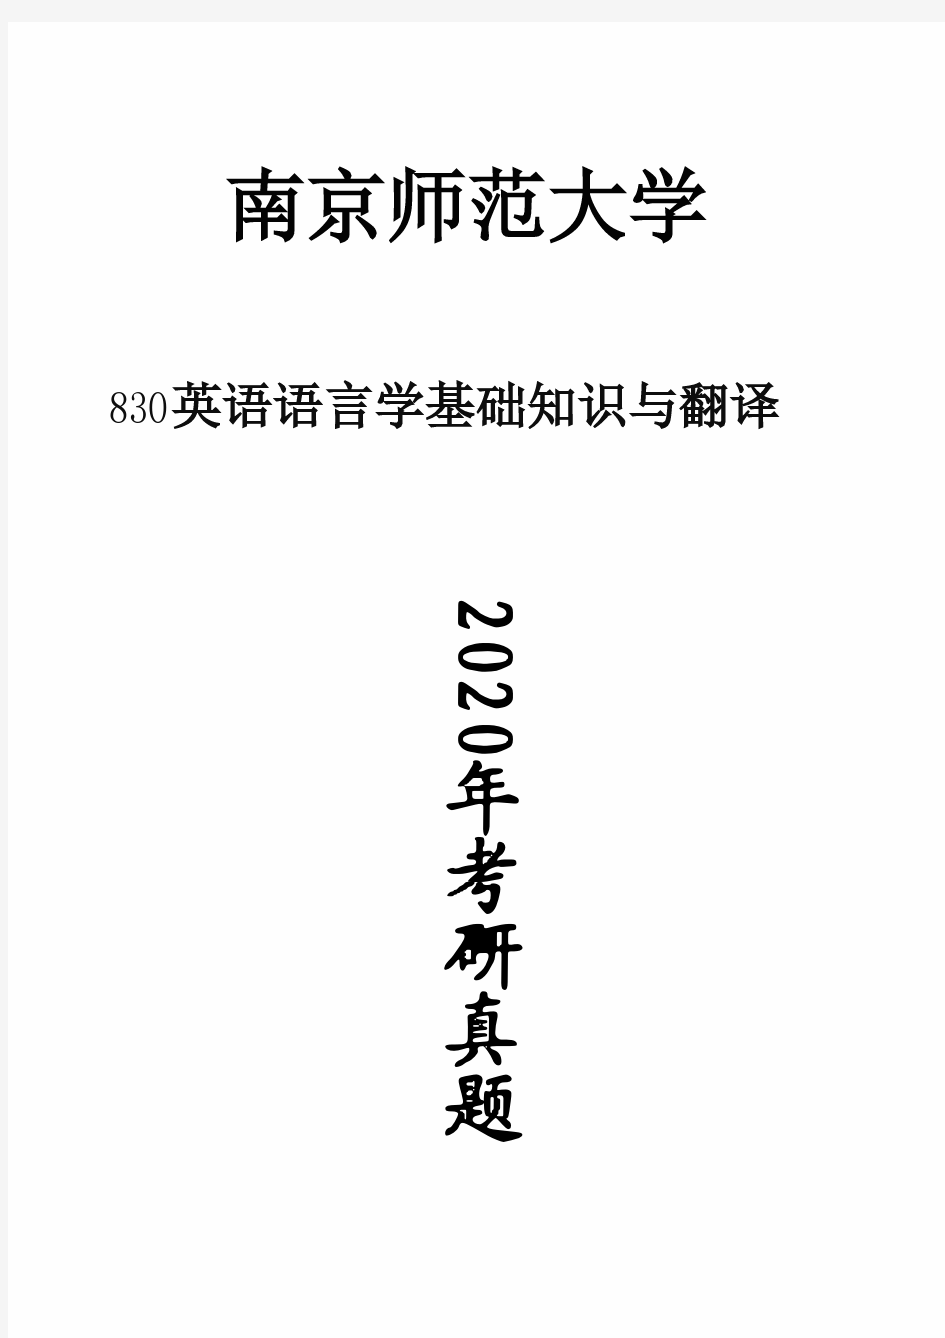 南京师范大学830英语语言学基础知识与翻译2020年考研真题试卷试题